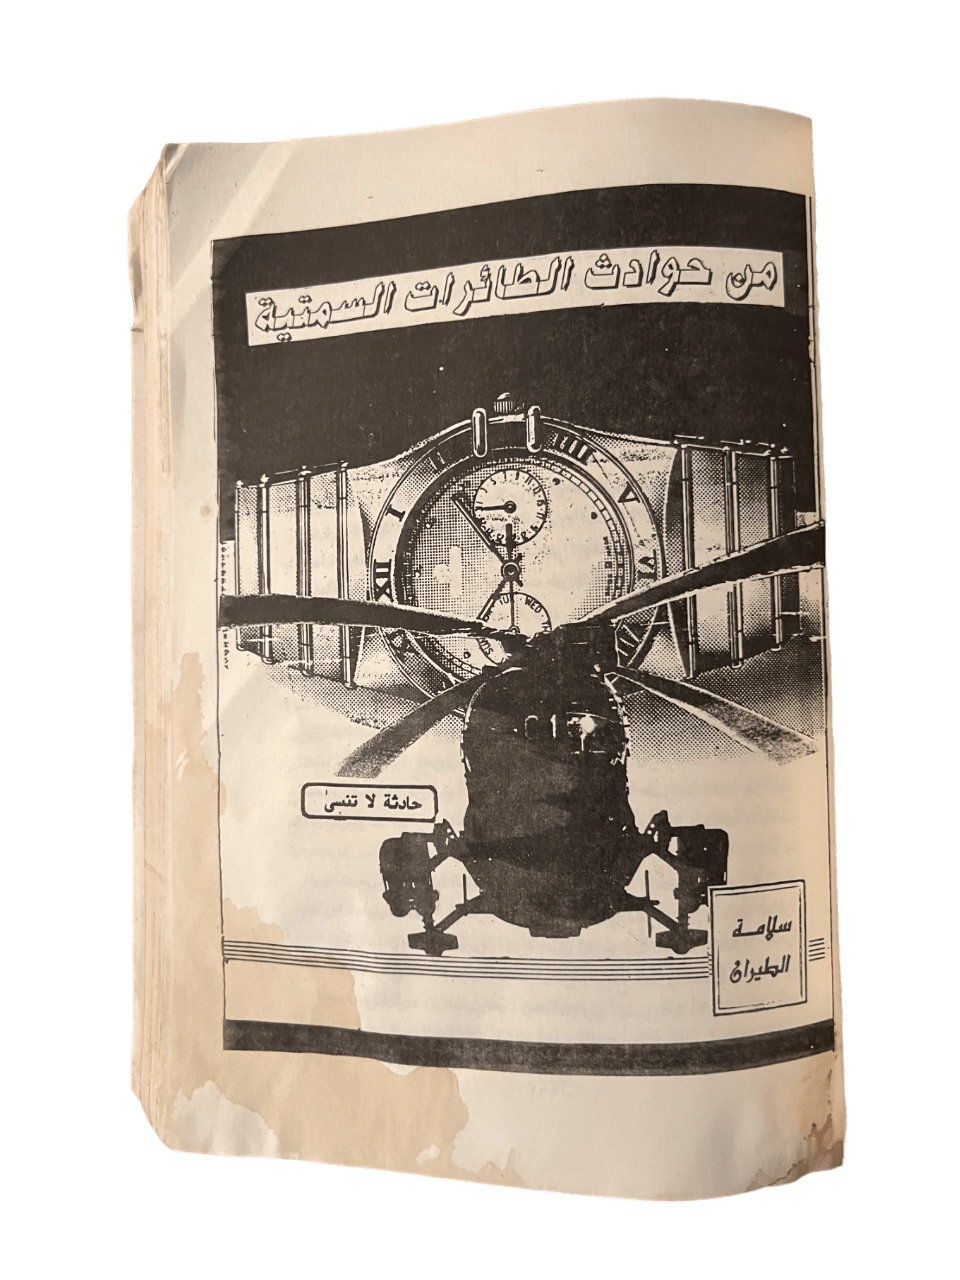 Al-Samtiyat: Mukhtarat 3skaria (The Azimuth: A Military Anthology) - KHAJISTAN™